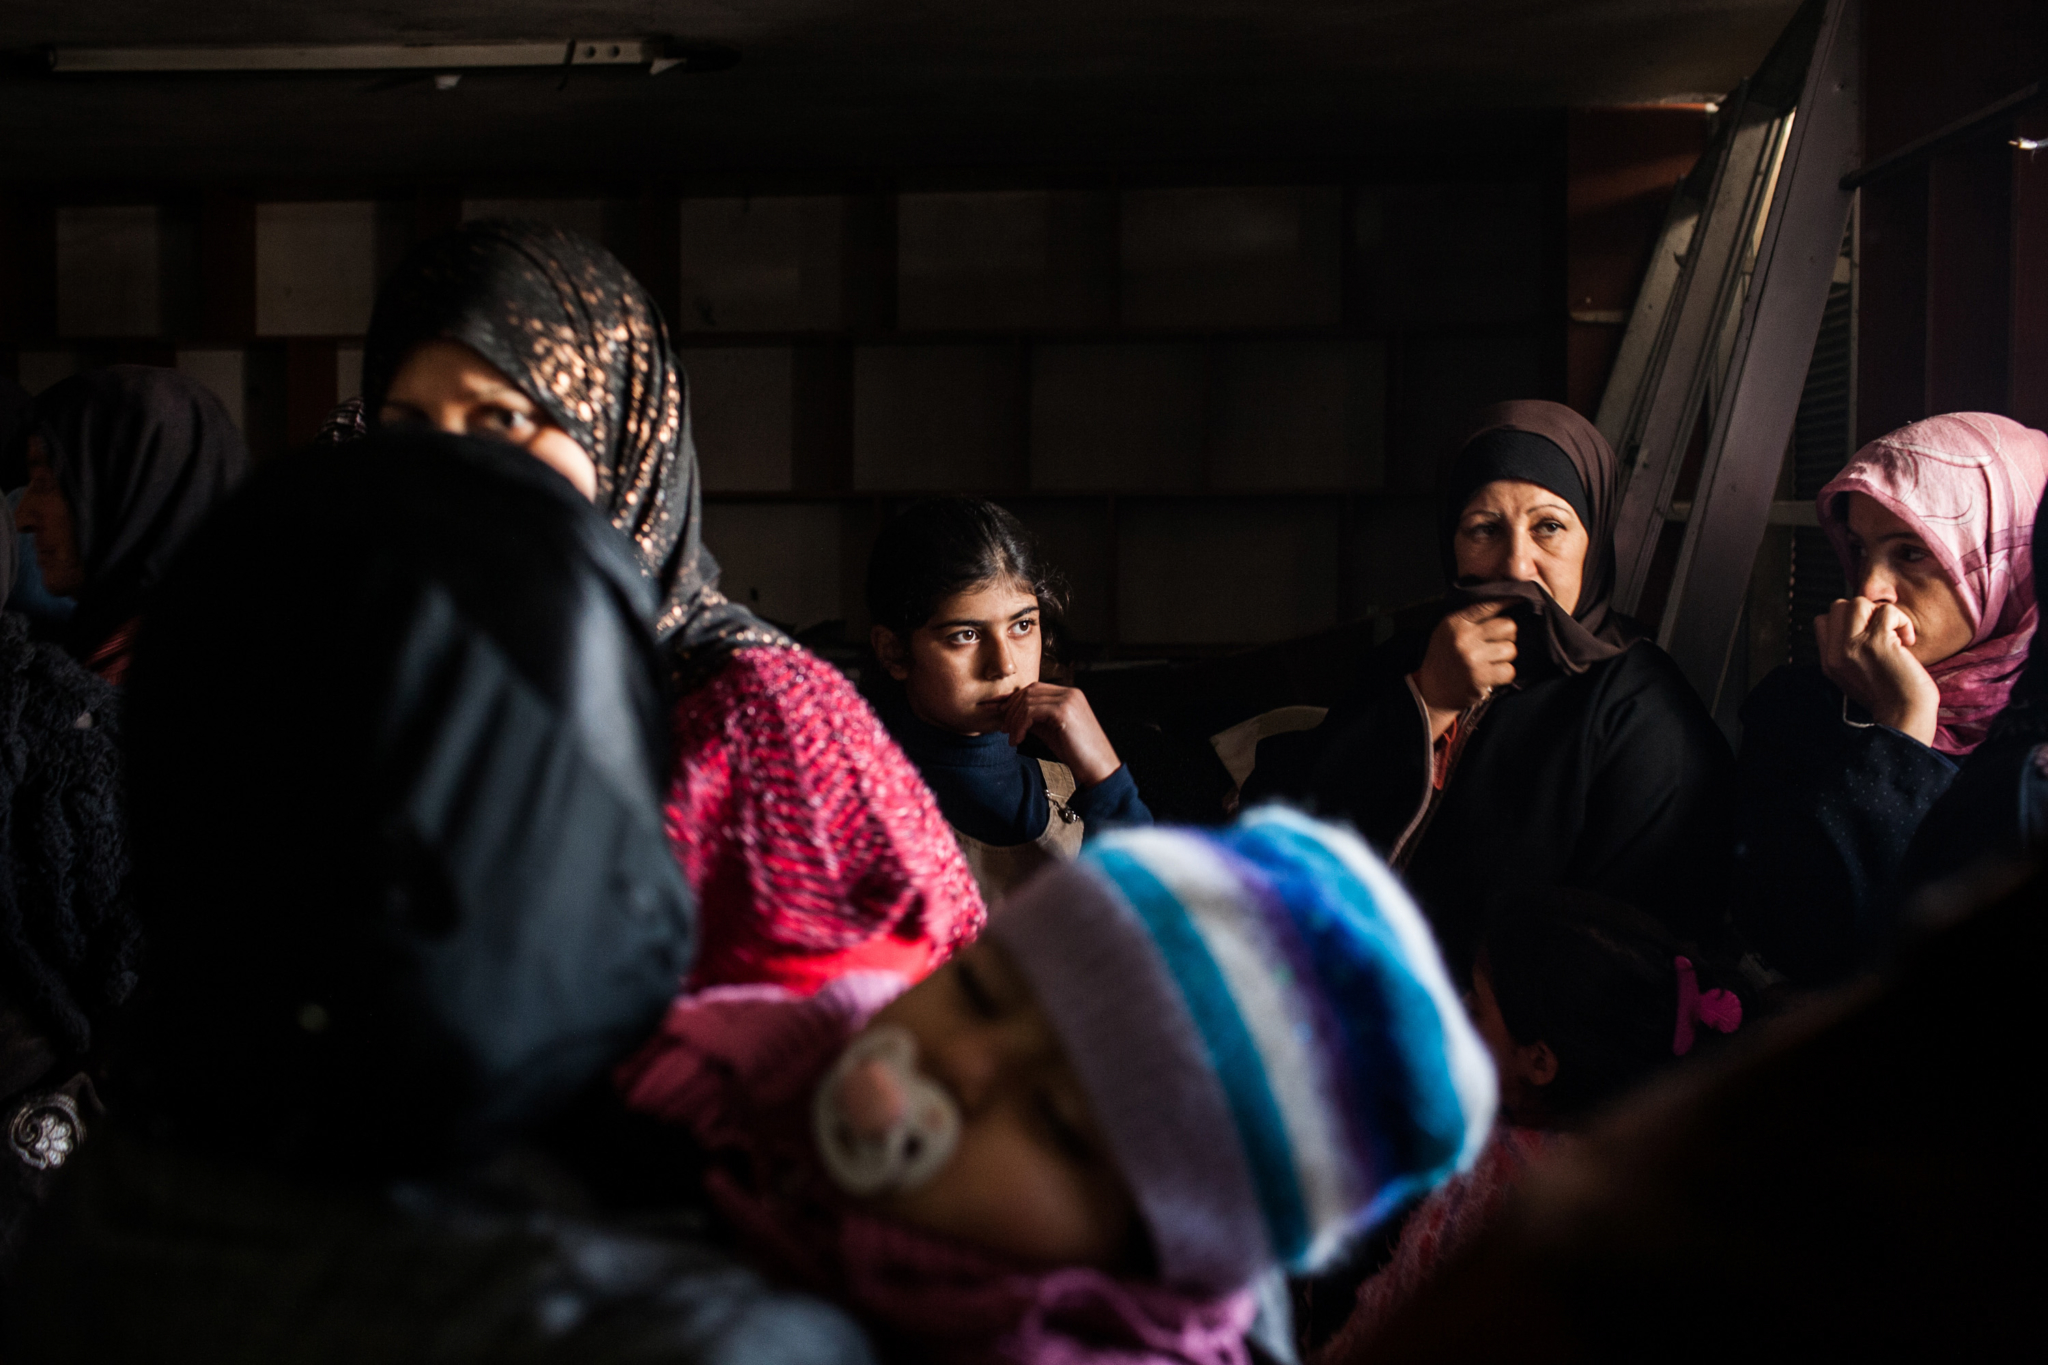 Mulheres aguardam para serem atendidas por um médico no norte da Síria. Equipes de MSF estão fornecendo cuidados de saúde emergenciais, obstétricos e gerais na Síria. De junho de 2012 a janeiro de 2013, foram realizadas mais de 10 mil consultas e mais de 900 intervenções cirúrgicas.